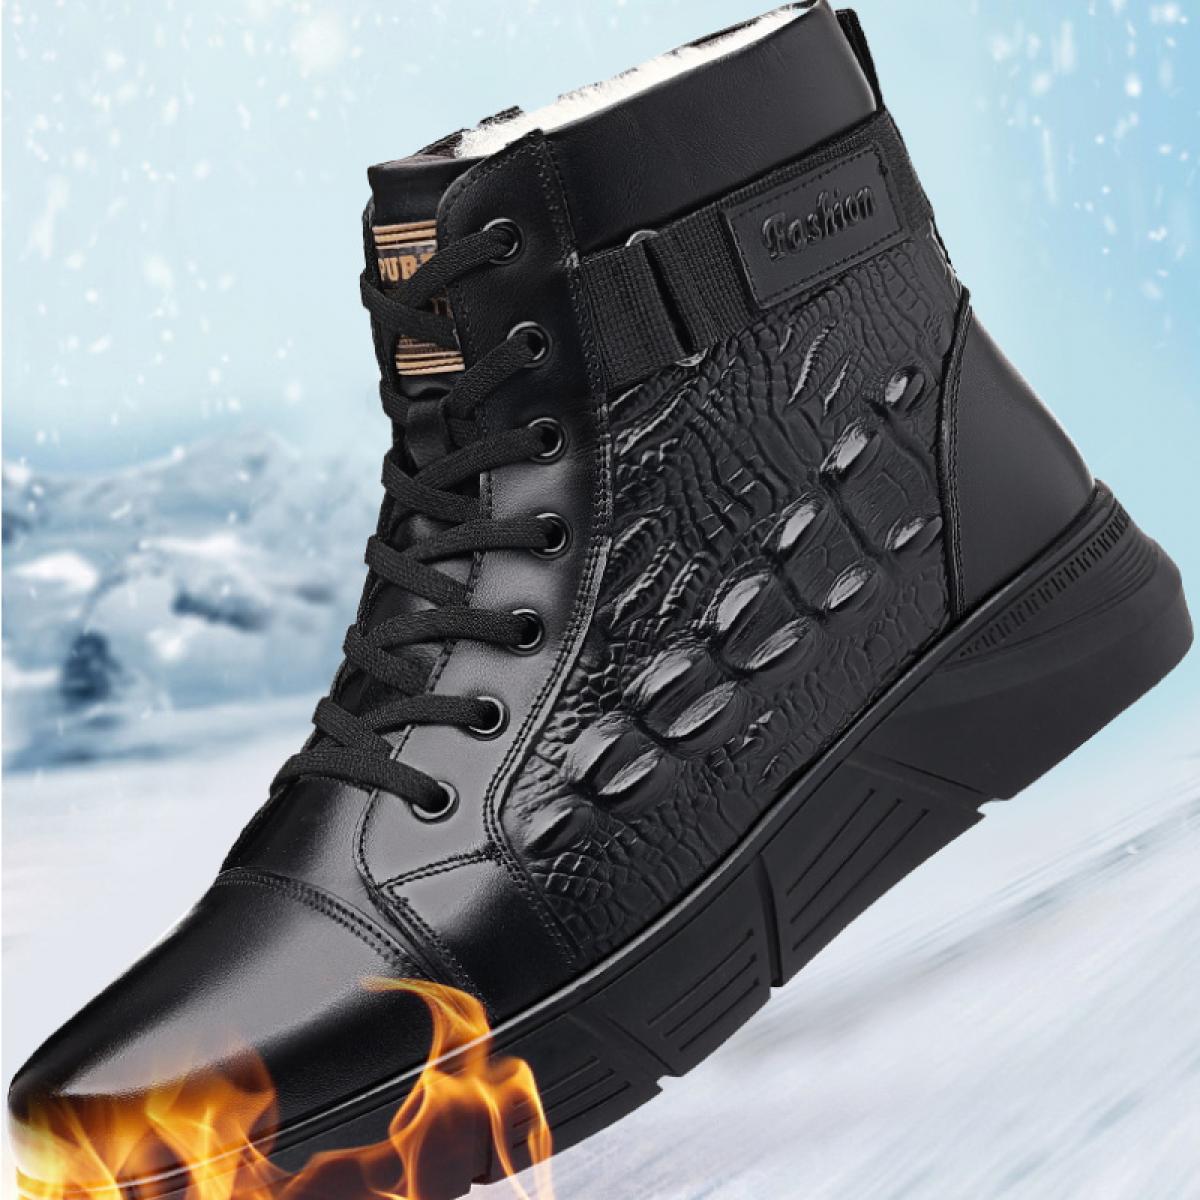 Chaussures d'hiver en coton imperméables pour hommes, bottes de neige chaudes et décontractées à tête ronde, épaisses, antidérap